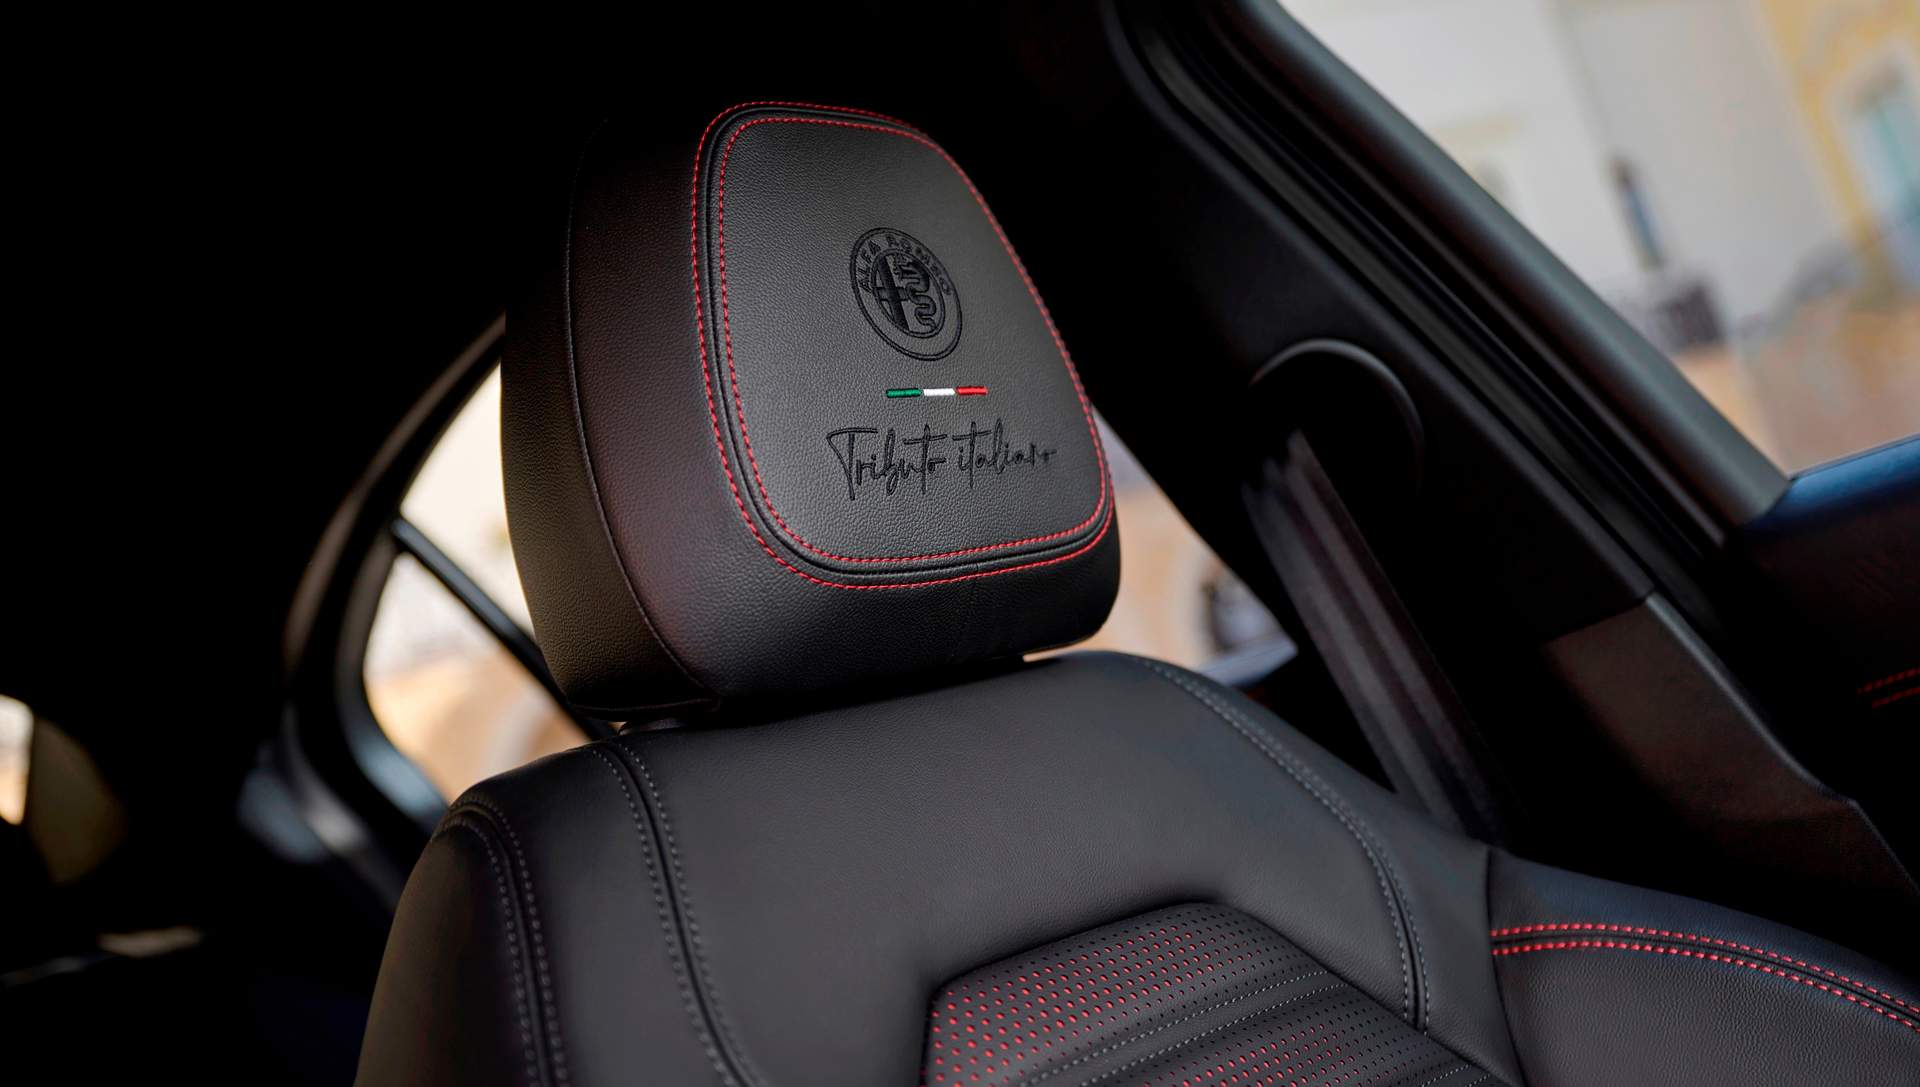 Los reposacabezas delanteros llevan bordados el logo “Tributo italiano”. A destacar los puntos rojos en los asientos de cuero negro.